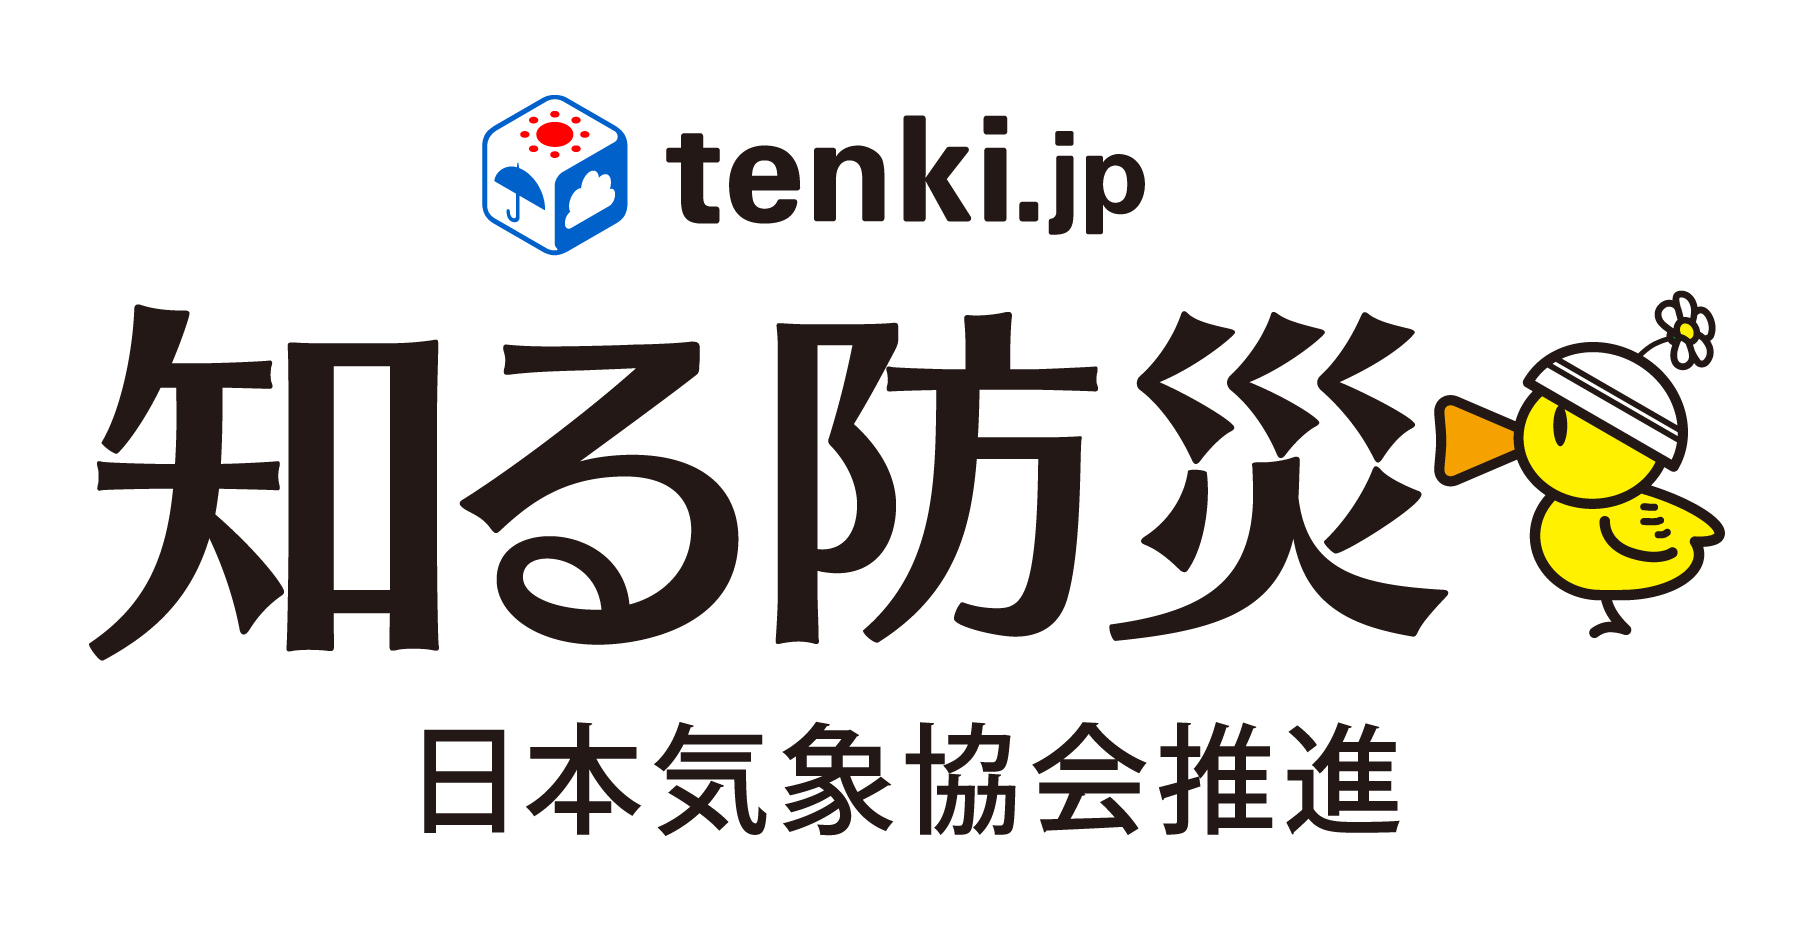 「tenki.jp知る防災」プロジェクト　ブランドロゴ